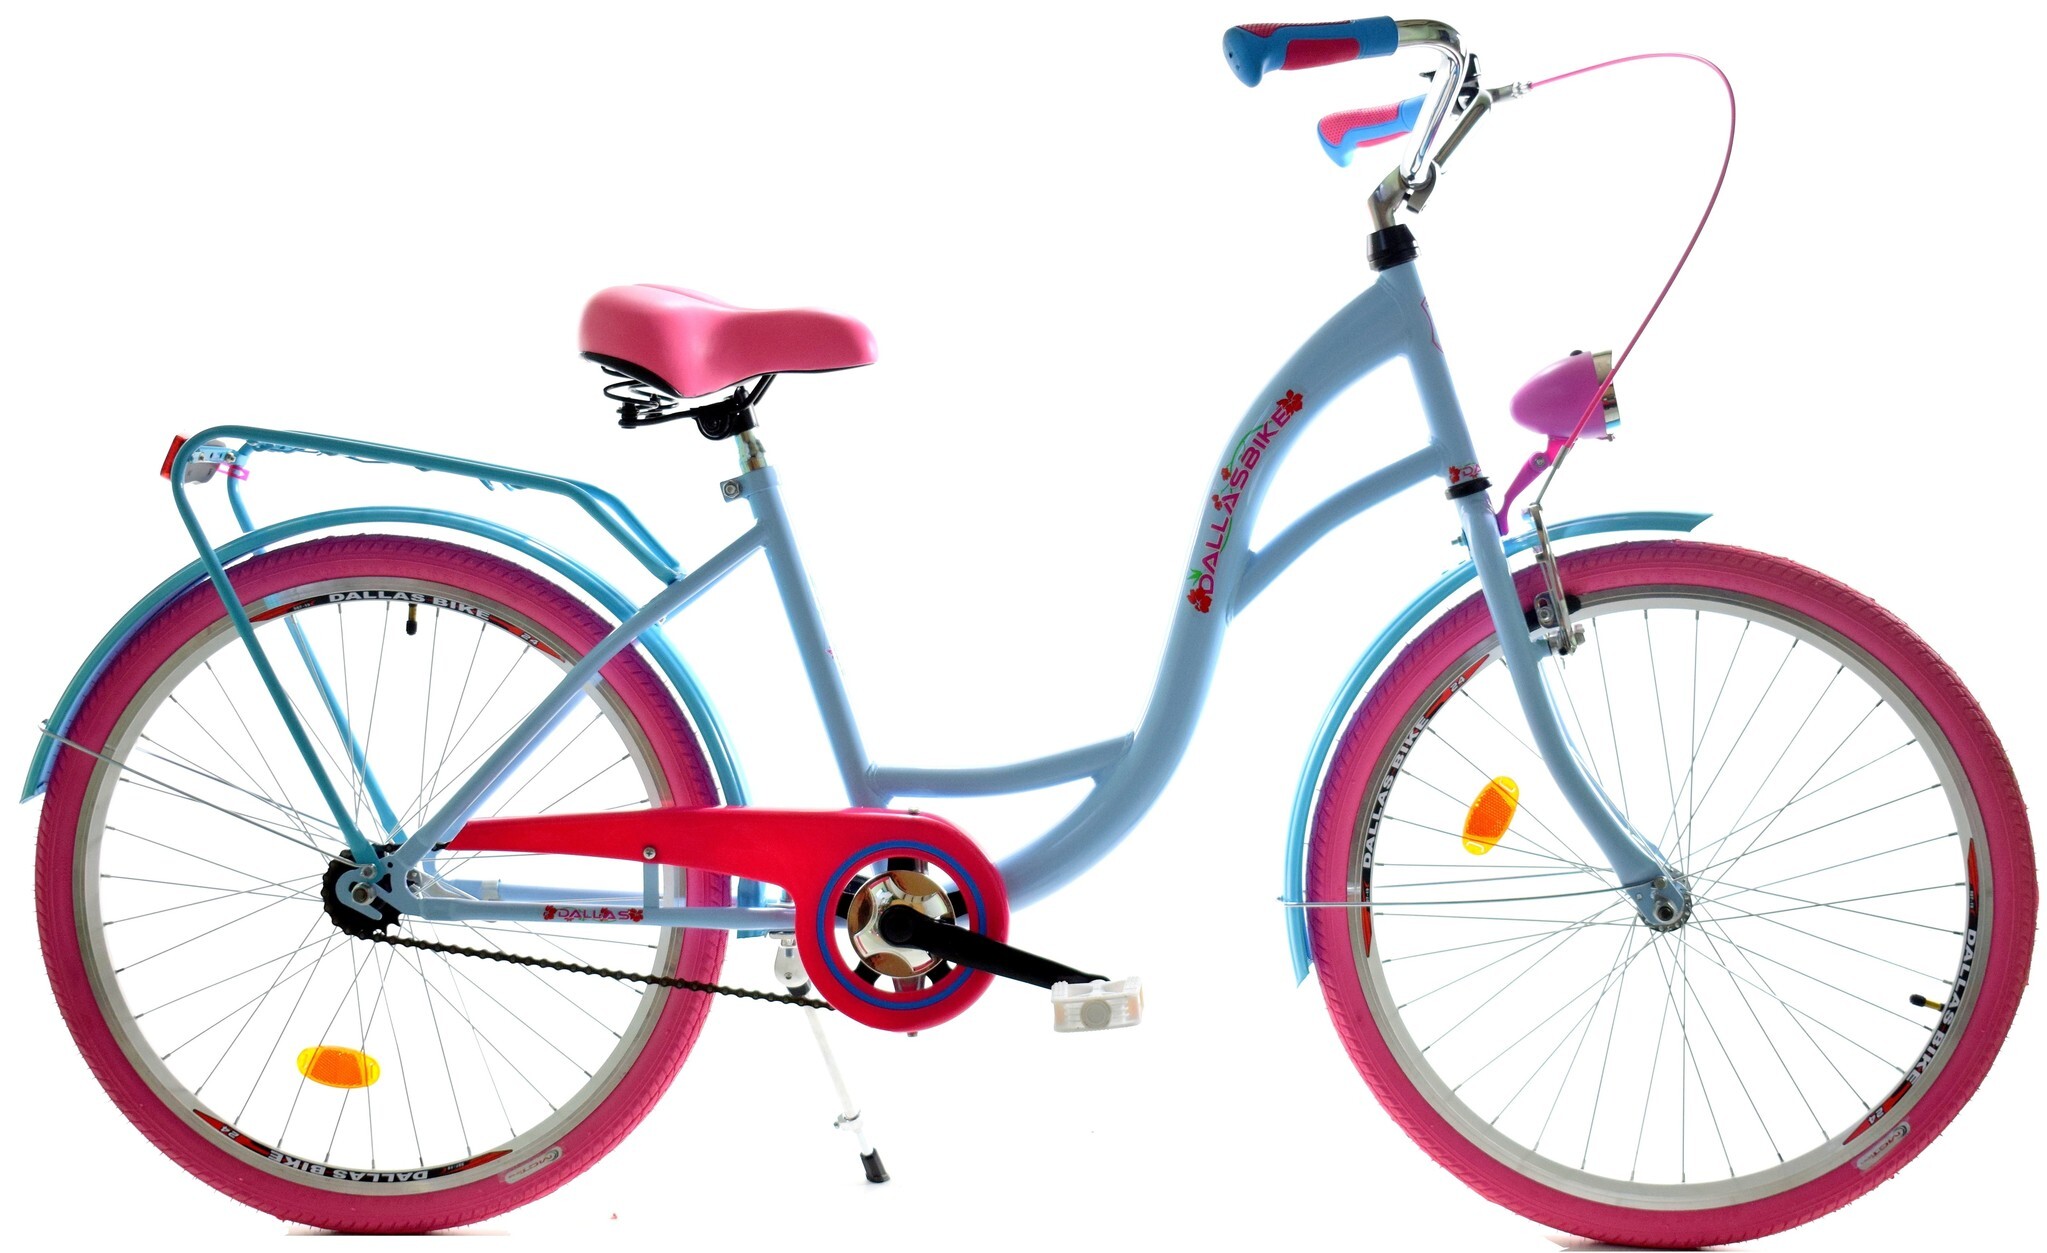 Viking Choice / Meisjesfiets 24 inch stevig model roze met blauw van Dallas Bike